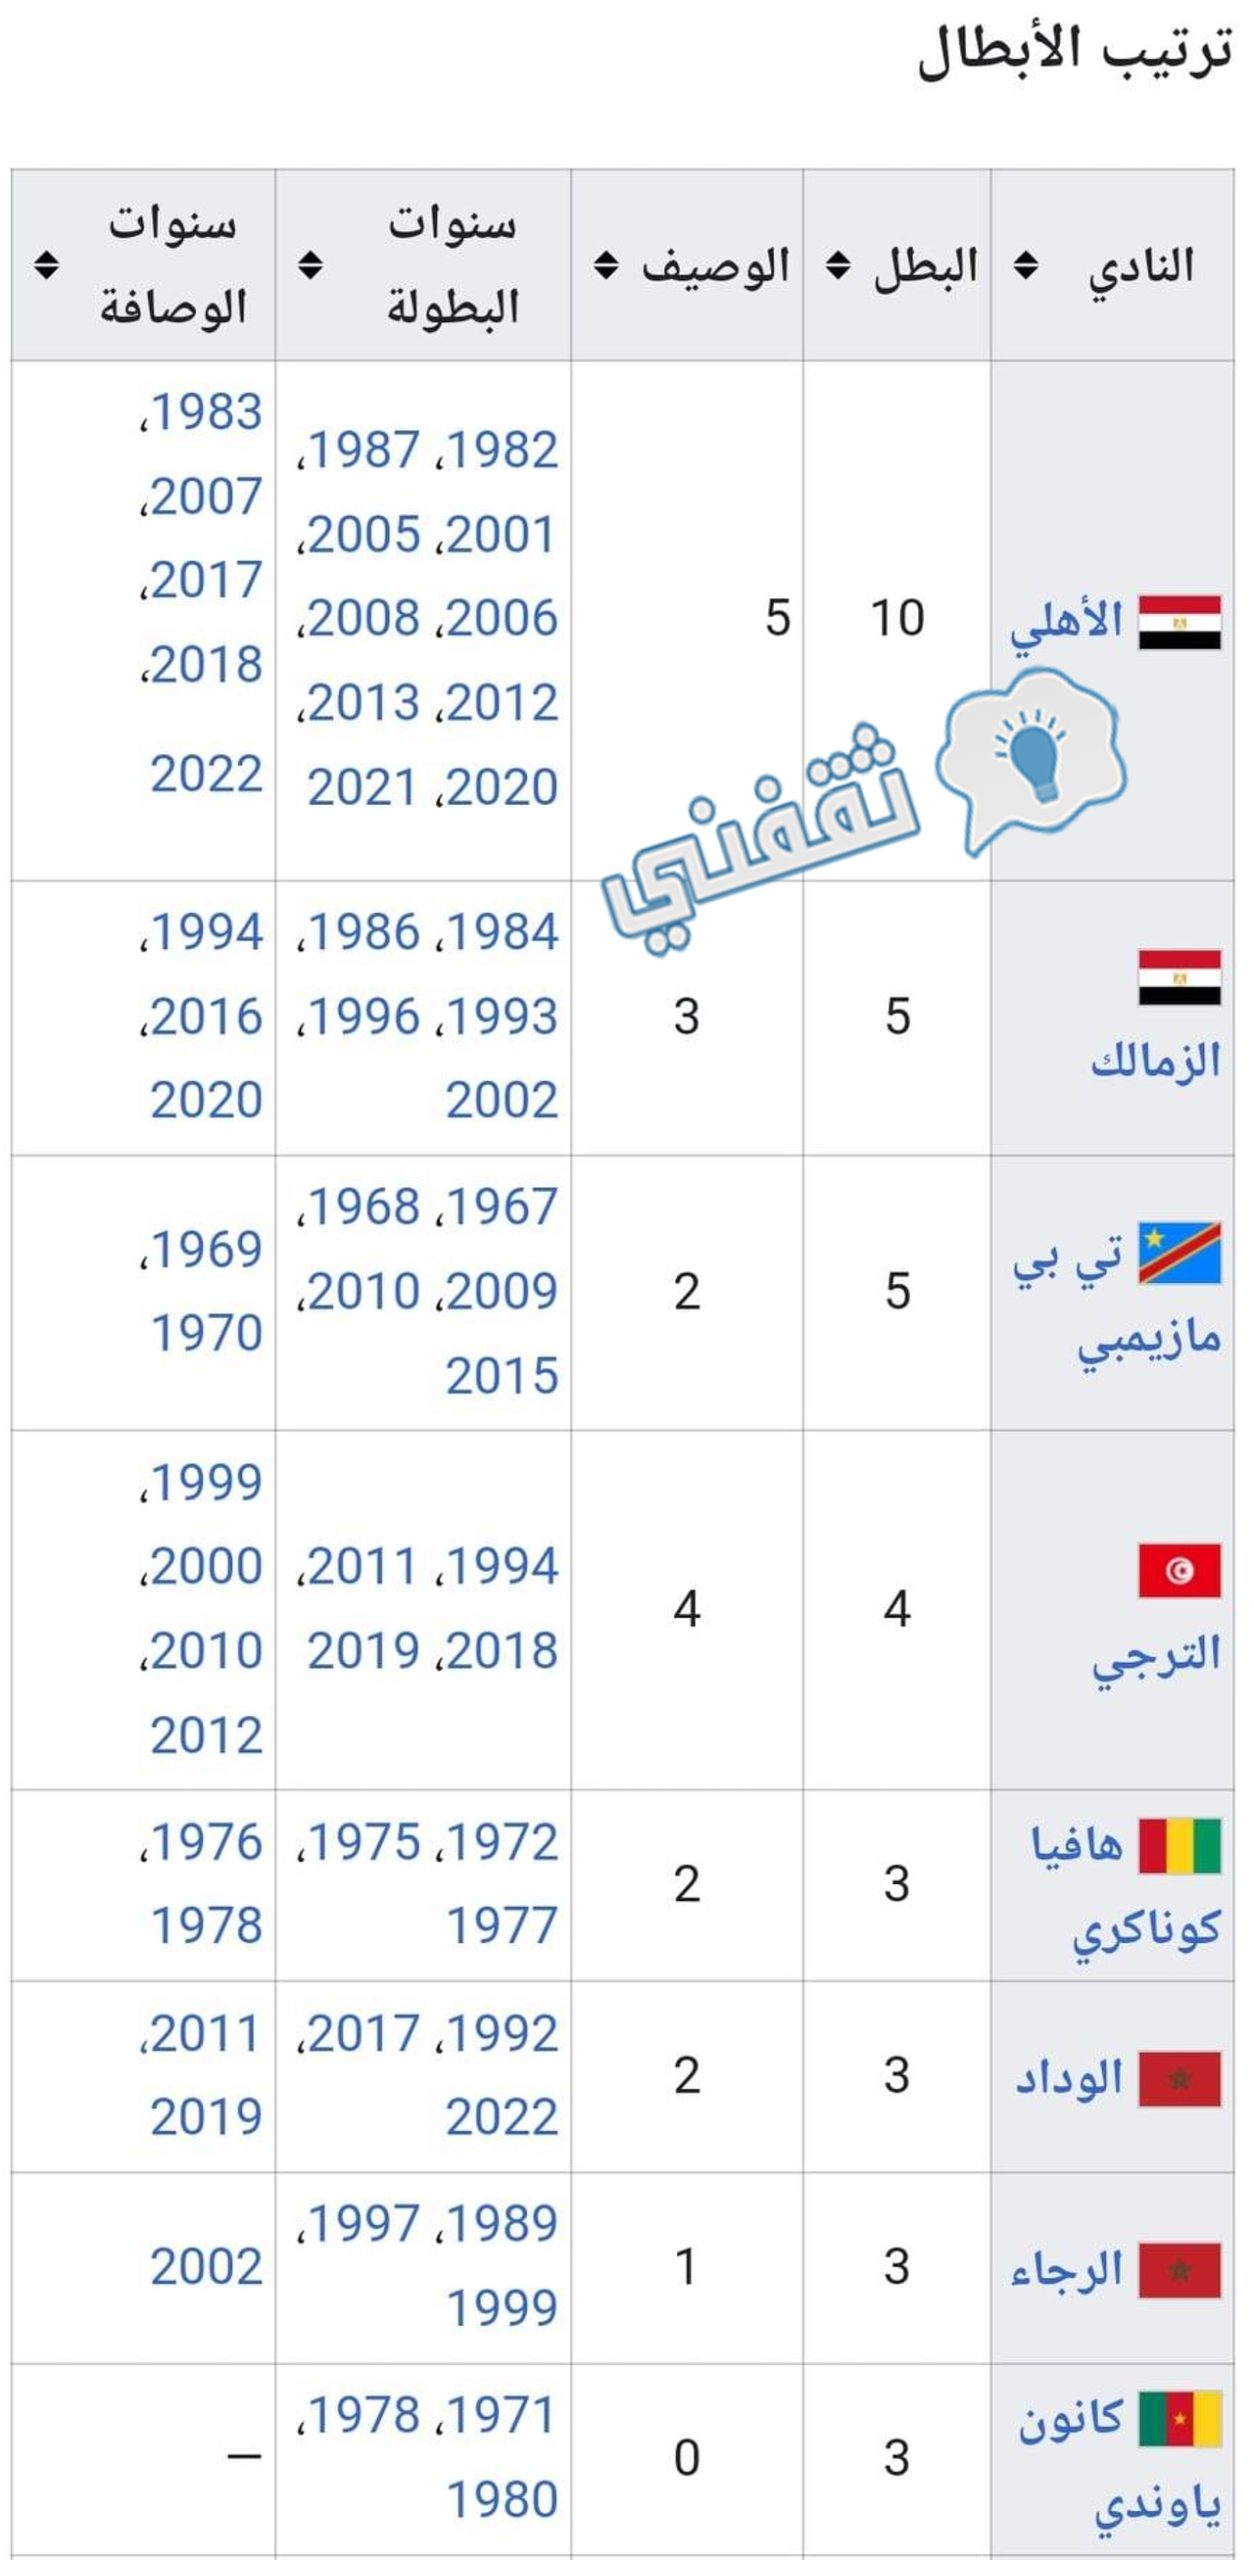 سجل الأندية الأكثر تتويجًا بلقب دوري أبطال أفريقيا قبل النسخة 27 لسنة 2023 وقبل مباراة الأهلي المصري والوداد الرياضي المغربي في النهائي